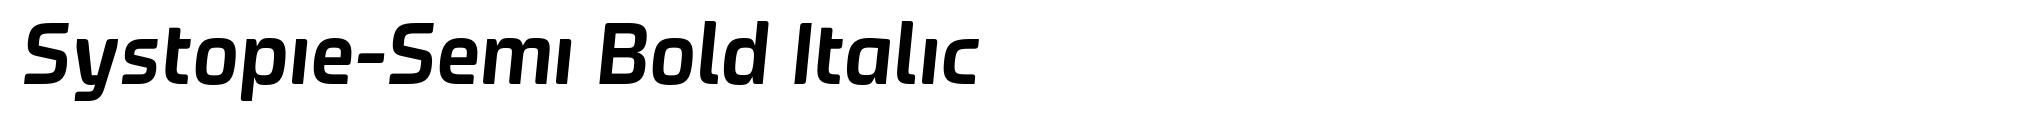 Systopie-Semi Bold Italic image